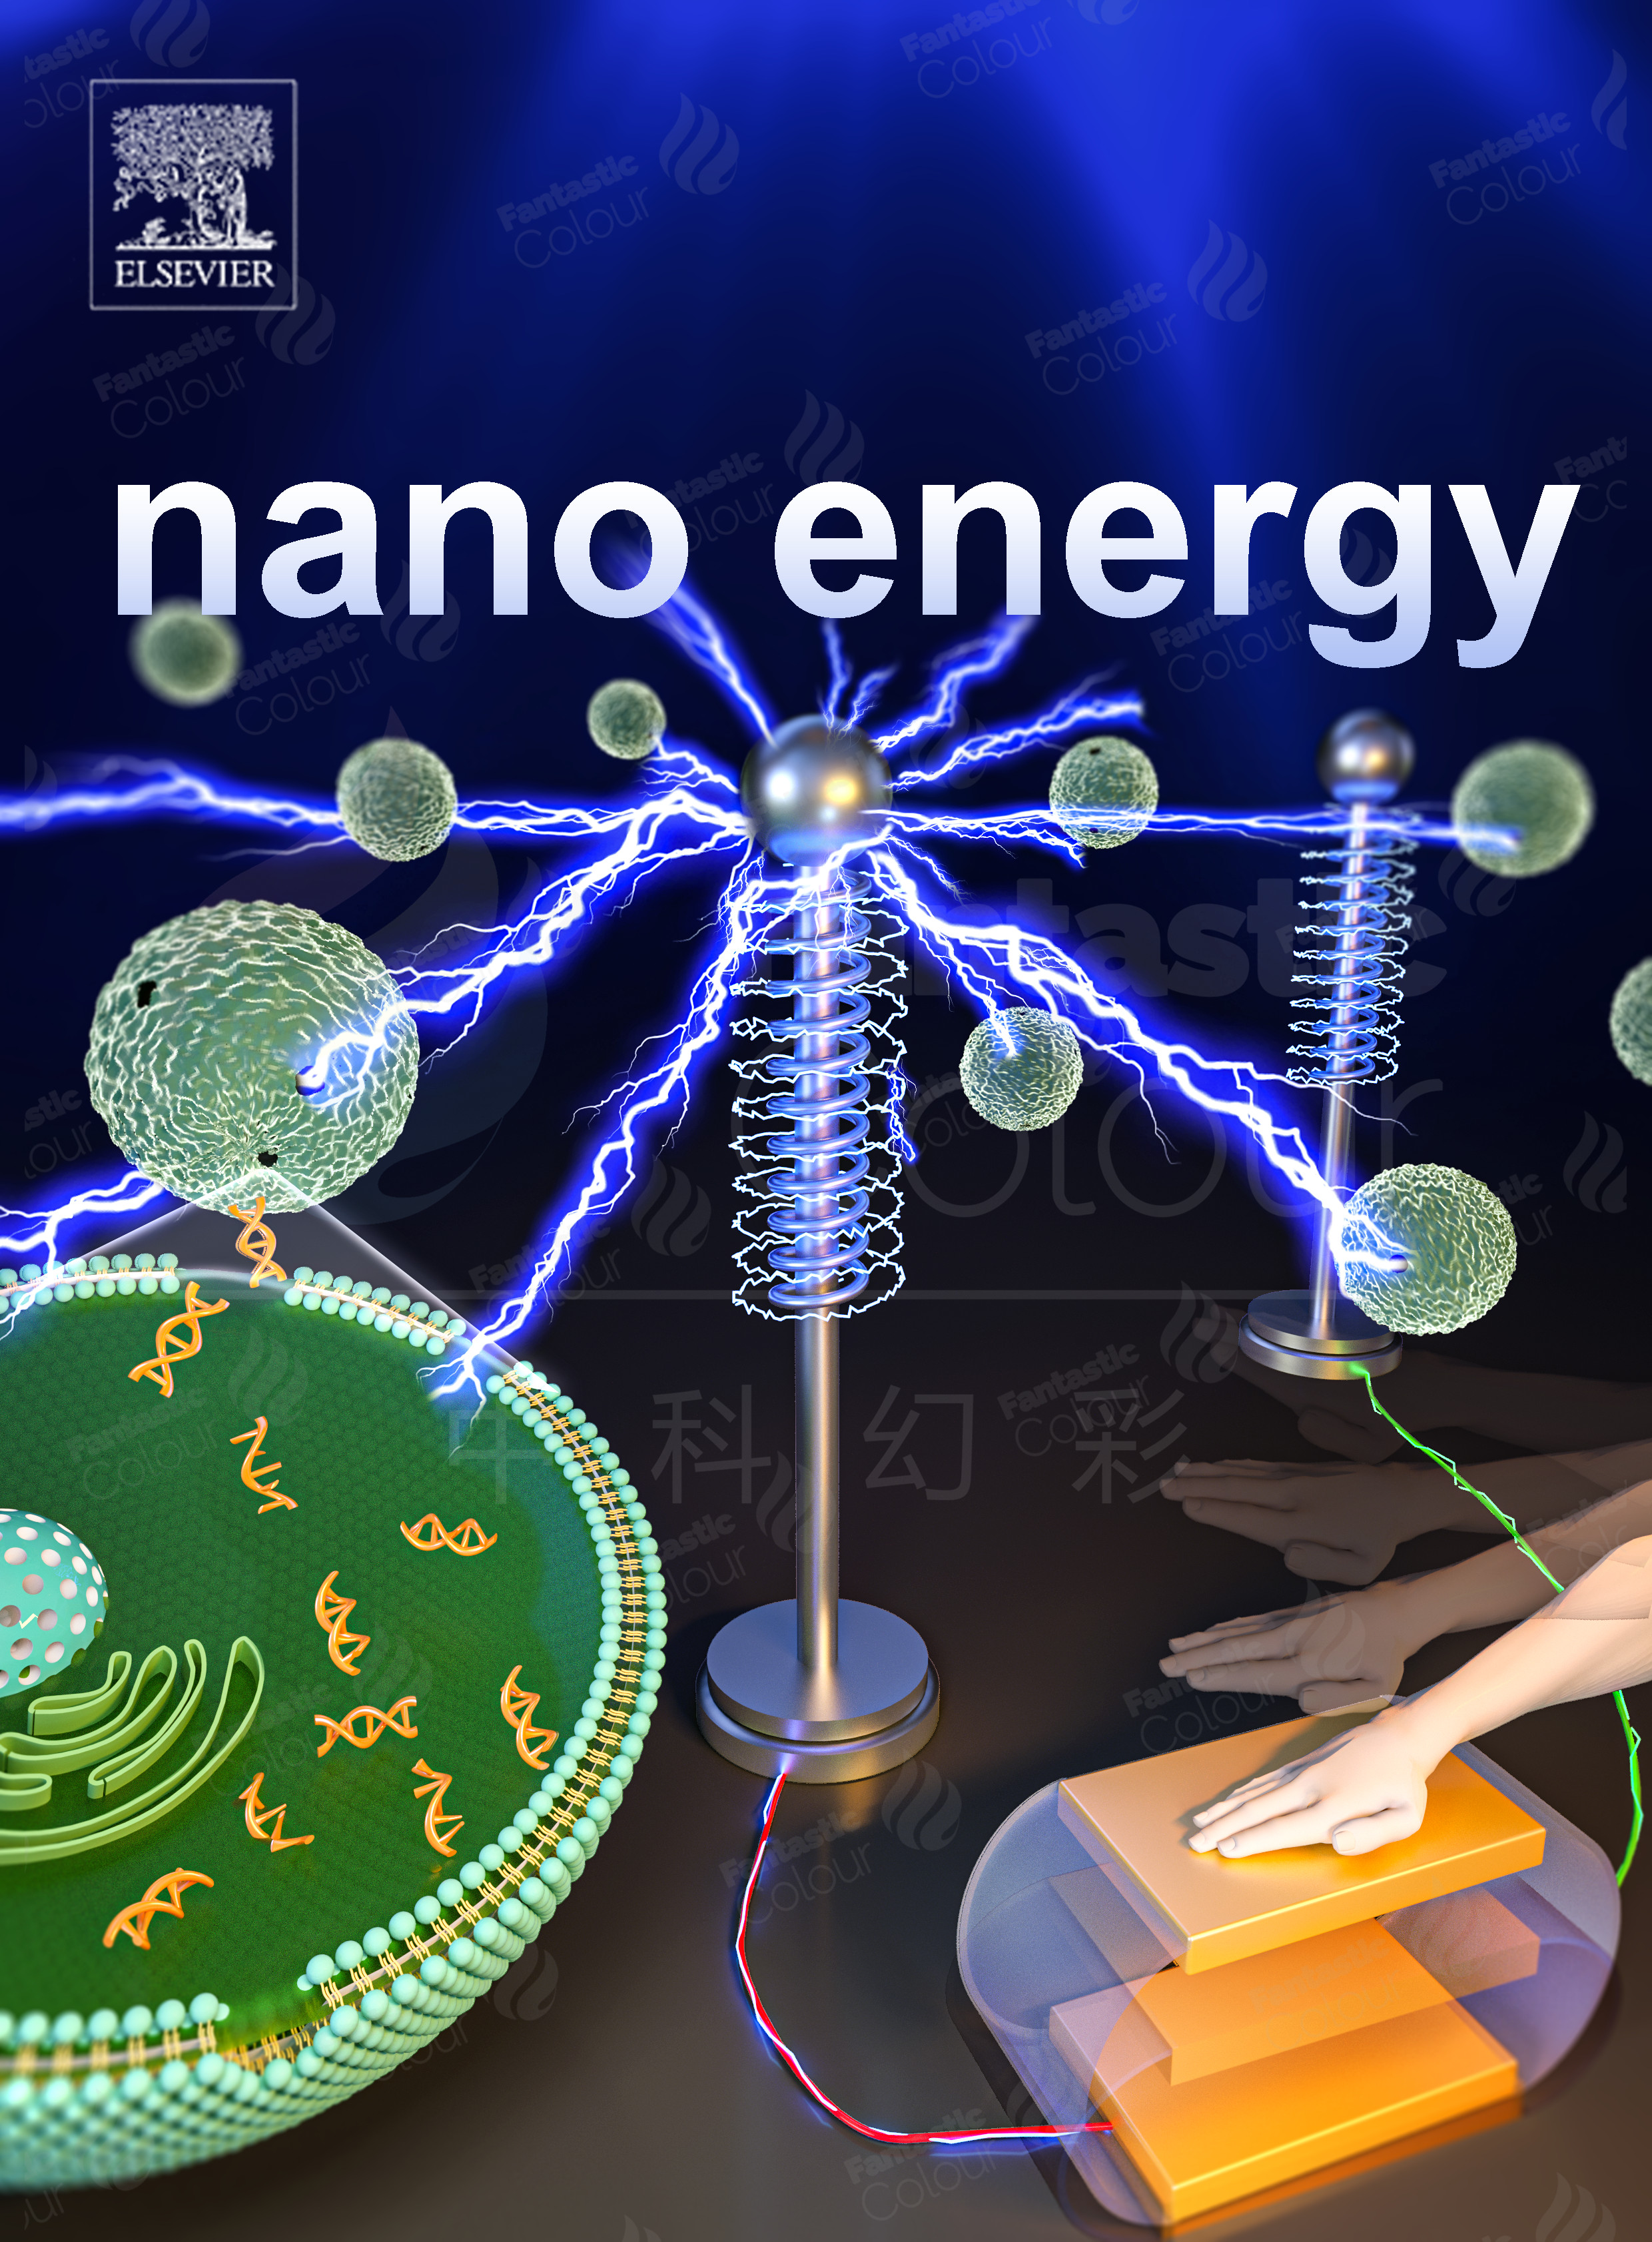 nano energy